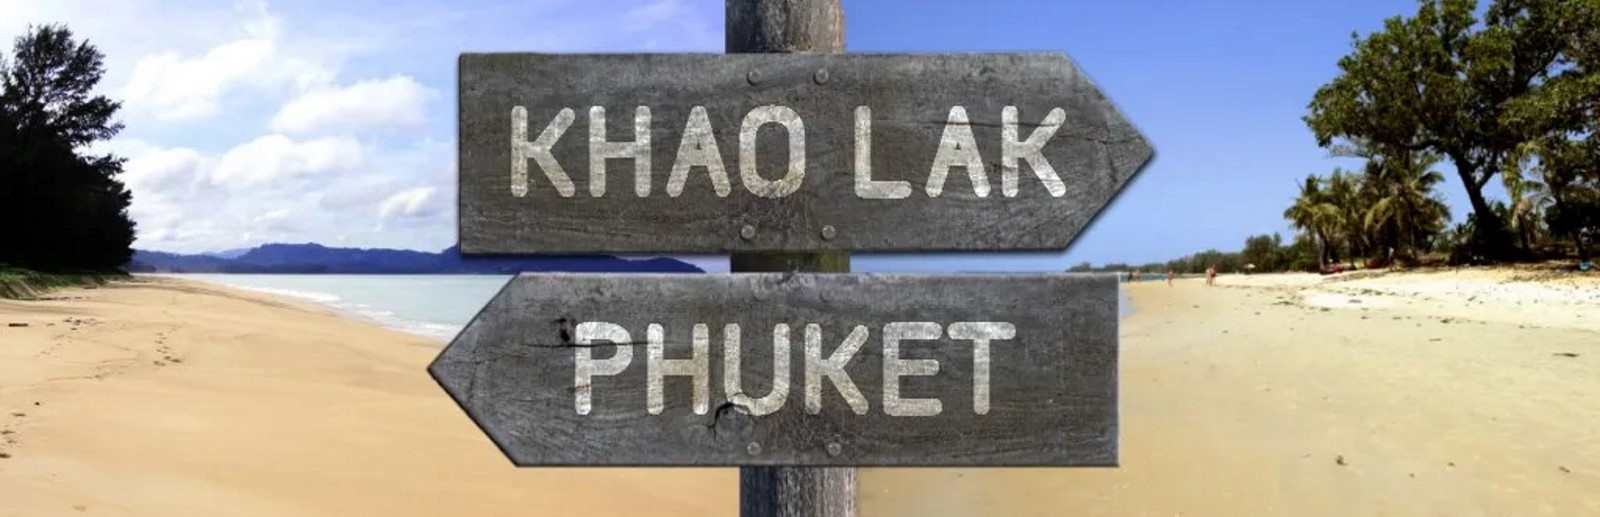 PARTIR A PHUKET OU KHAO LAK.jpg